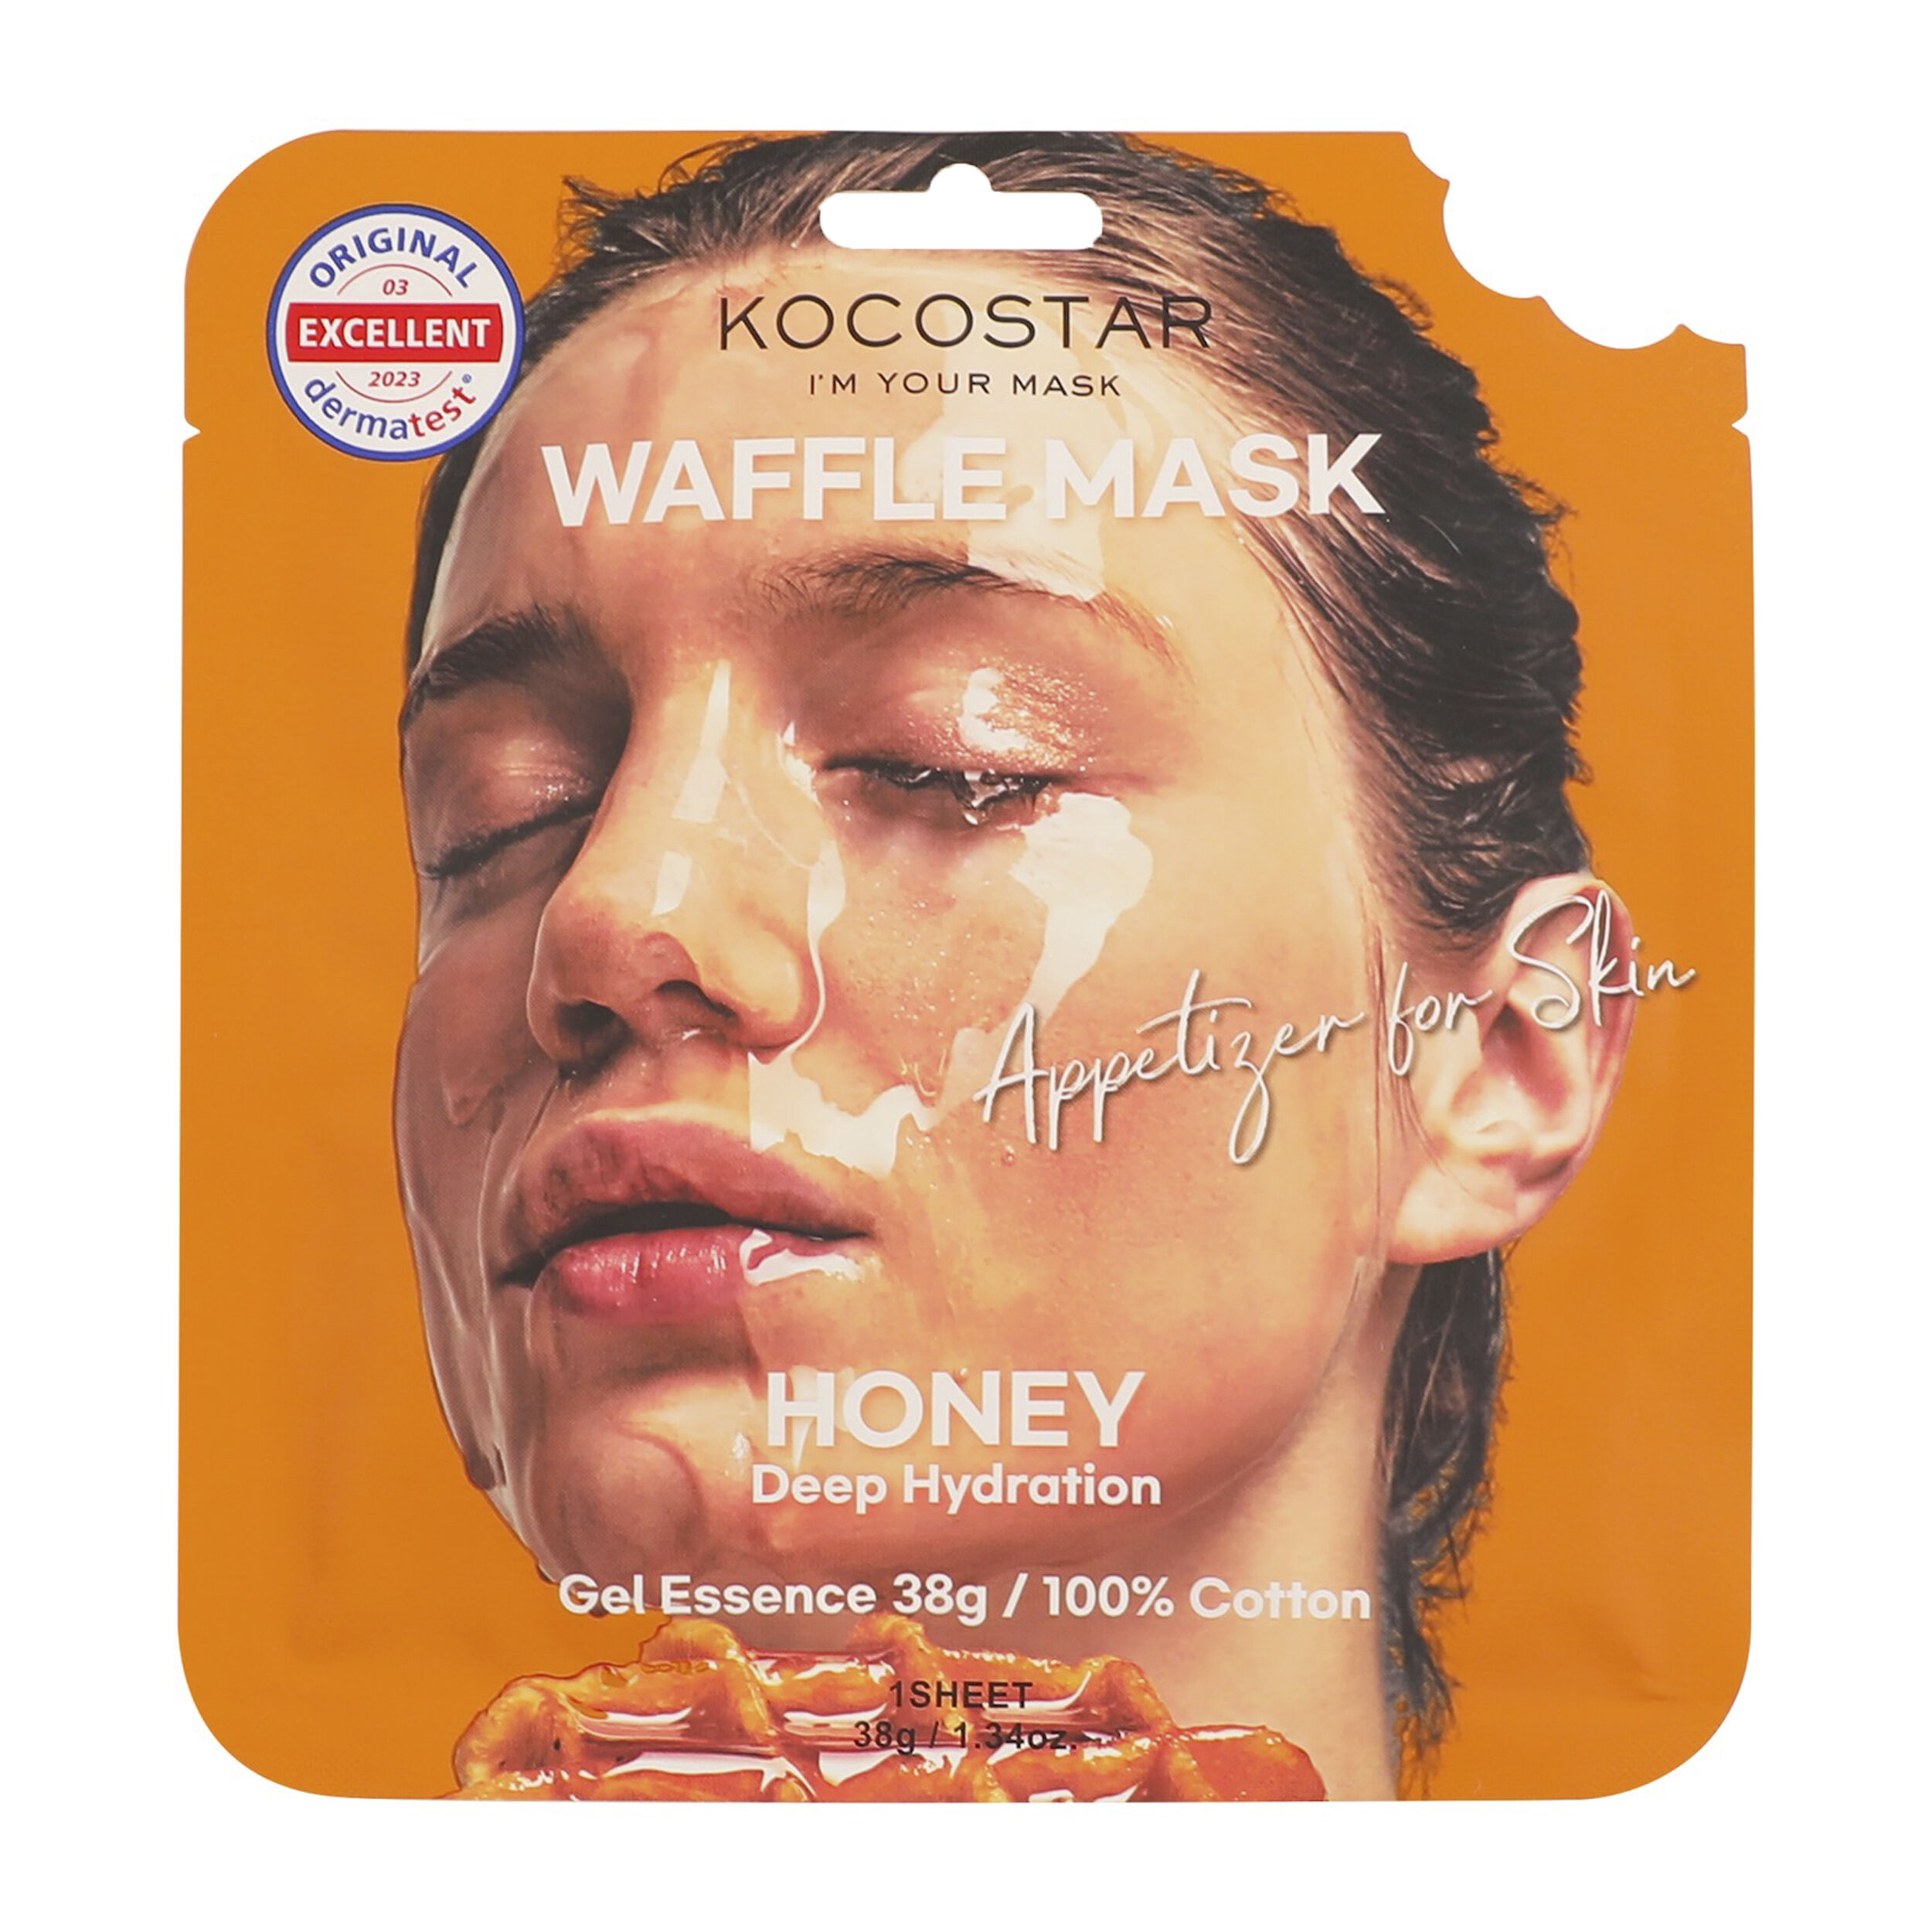 Медовая маска для лица Kocostar Waffle Mask, 38 гр уход за лицом celderma маска для лица гидрогелевая с экстрактом меда питательная